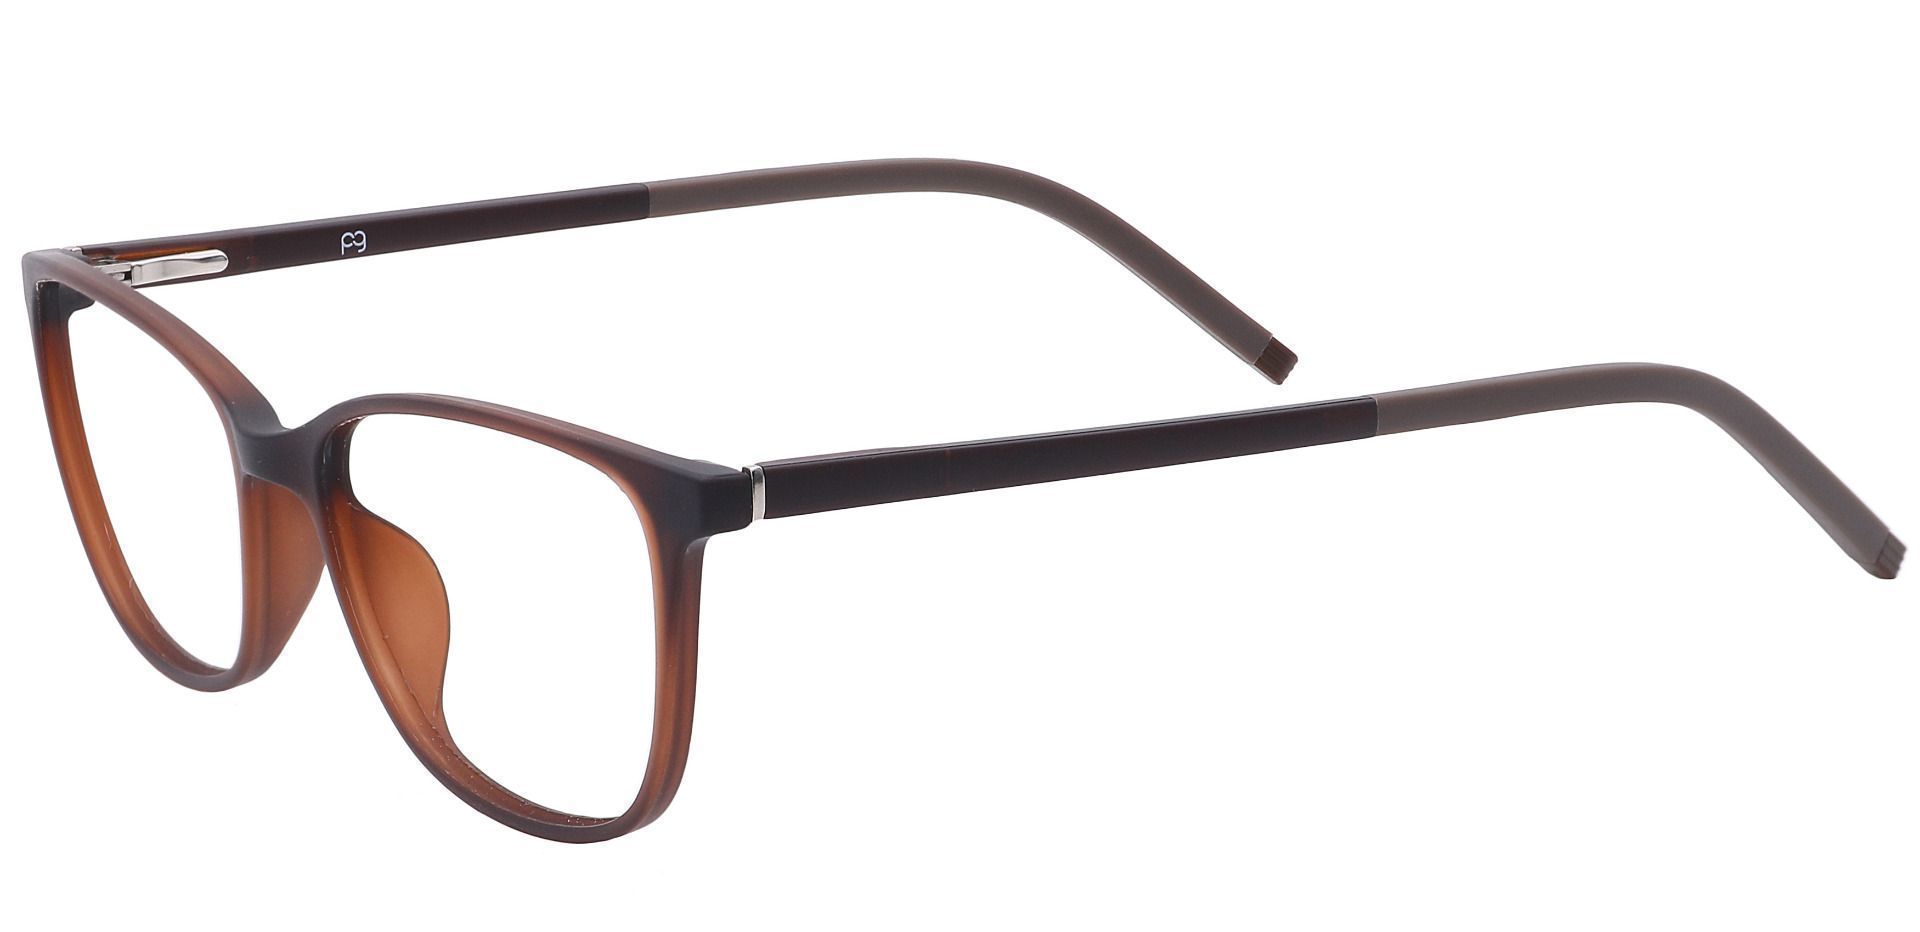 Danica Square Progressive Glasses - Brown